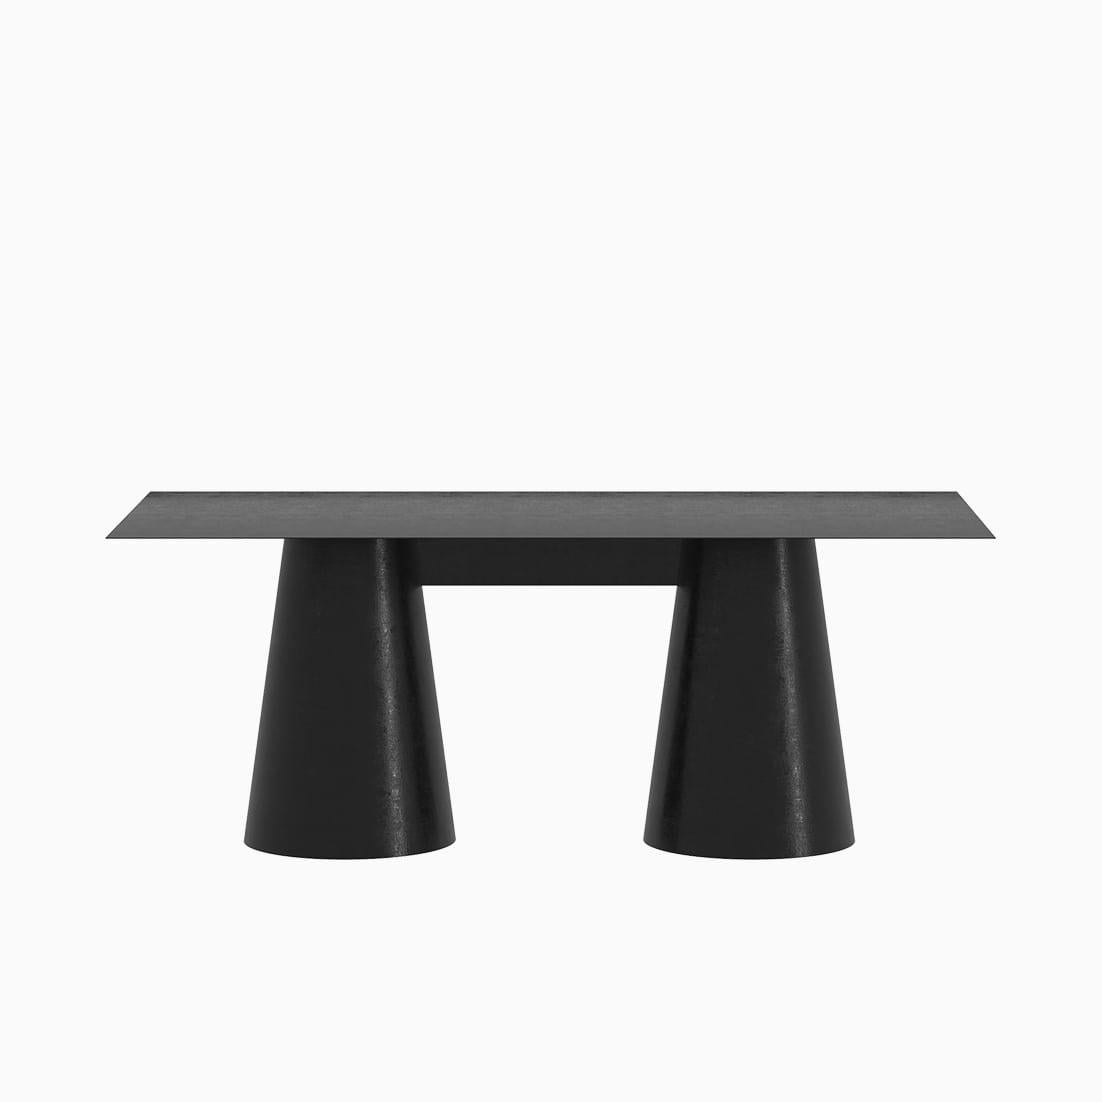 Der Conic Dining Table ist ein monolithisches Stück, das als Esstisch für den Innen- und Außenbereich konzipiert wurde. 
Von Hand aus galvanisiertem Aluminium gefertigt und mit einer matten elektrostatischen Beschichtung versehen, kann seine Größe